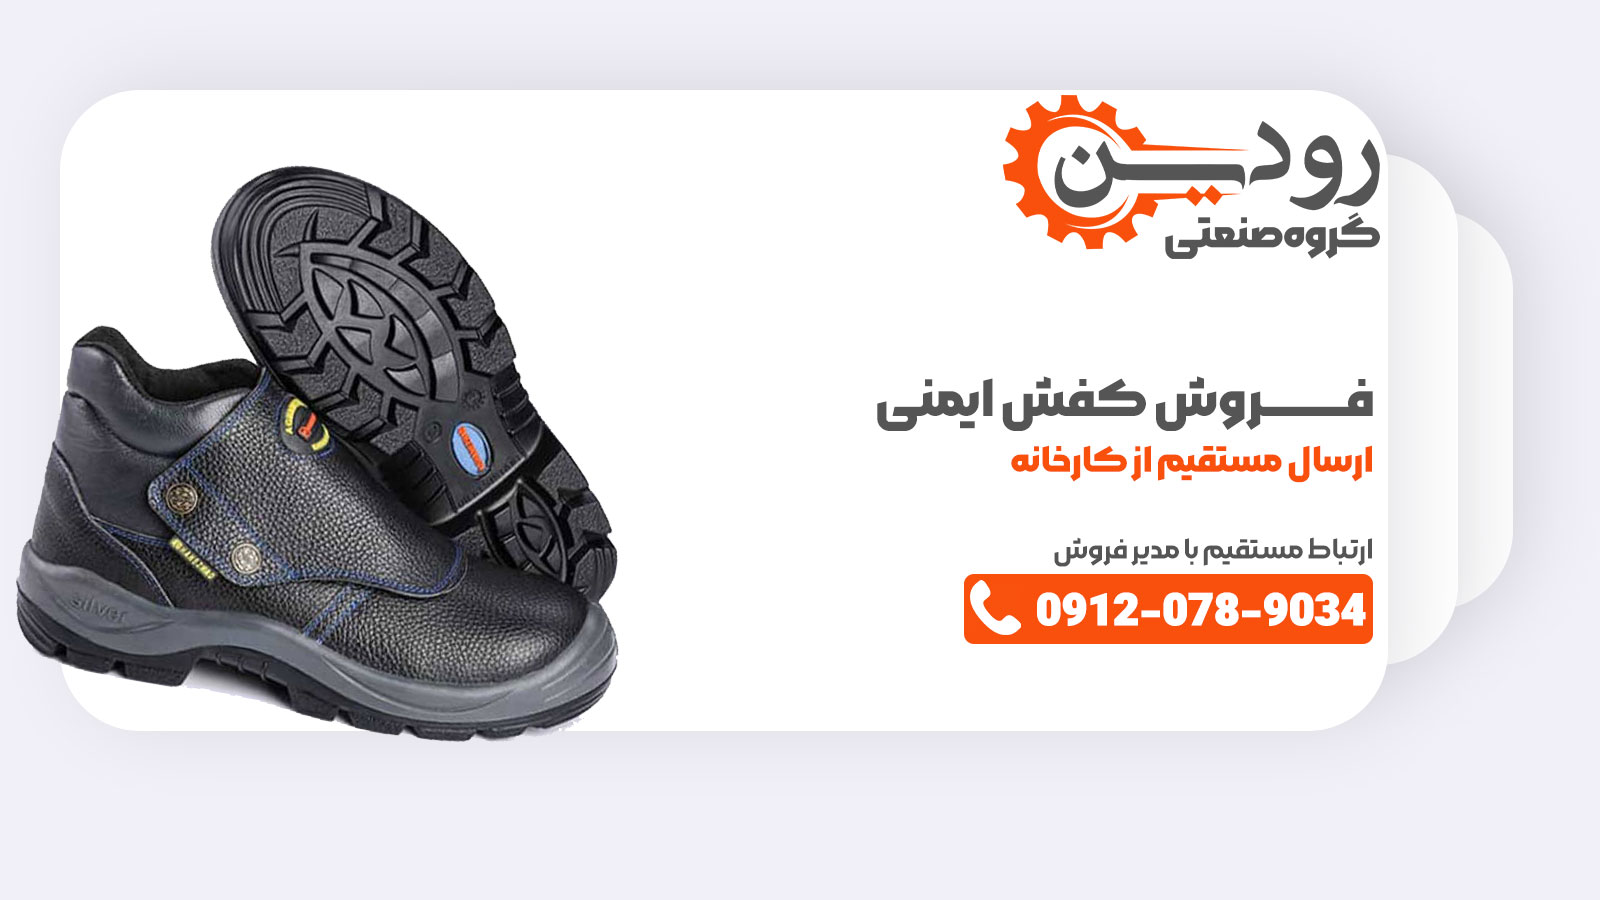 مرکز تولید کفش ایمنی در بوشهر توانسته با استان های دیگر قرارداد ببندد و پخش خود را به تمام کشور ایران انجام دهد.